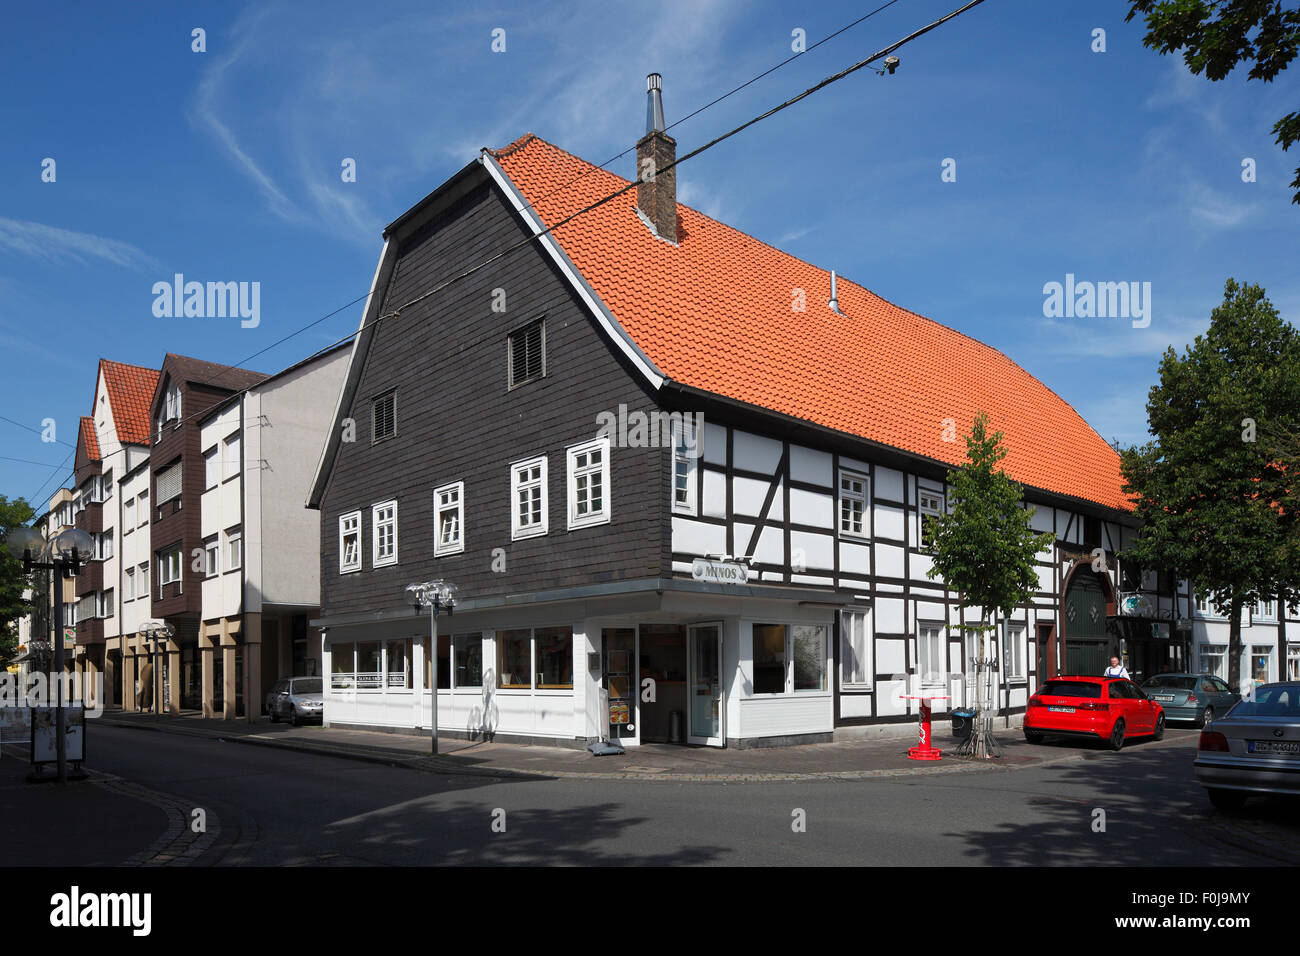 Wohnhaus und Geschaeftshaus Ecke Cappelstrasse und Fleischhauerstrasse, Fachwerkhaus mit Schieferfassade in Lippstadt, Ostwestfalen, Nordrhein-Westfal Stock Photo